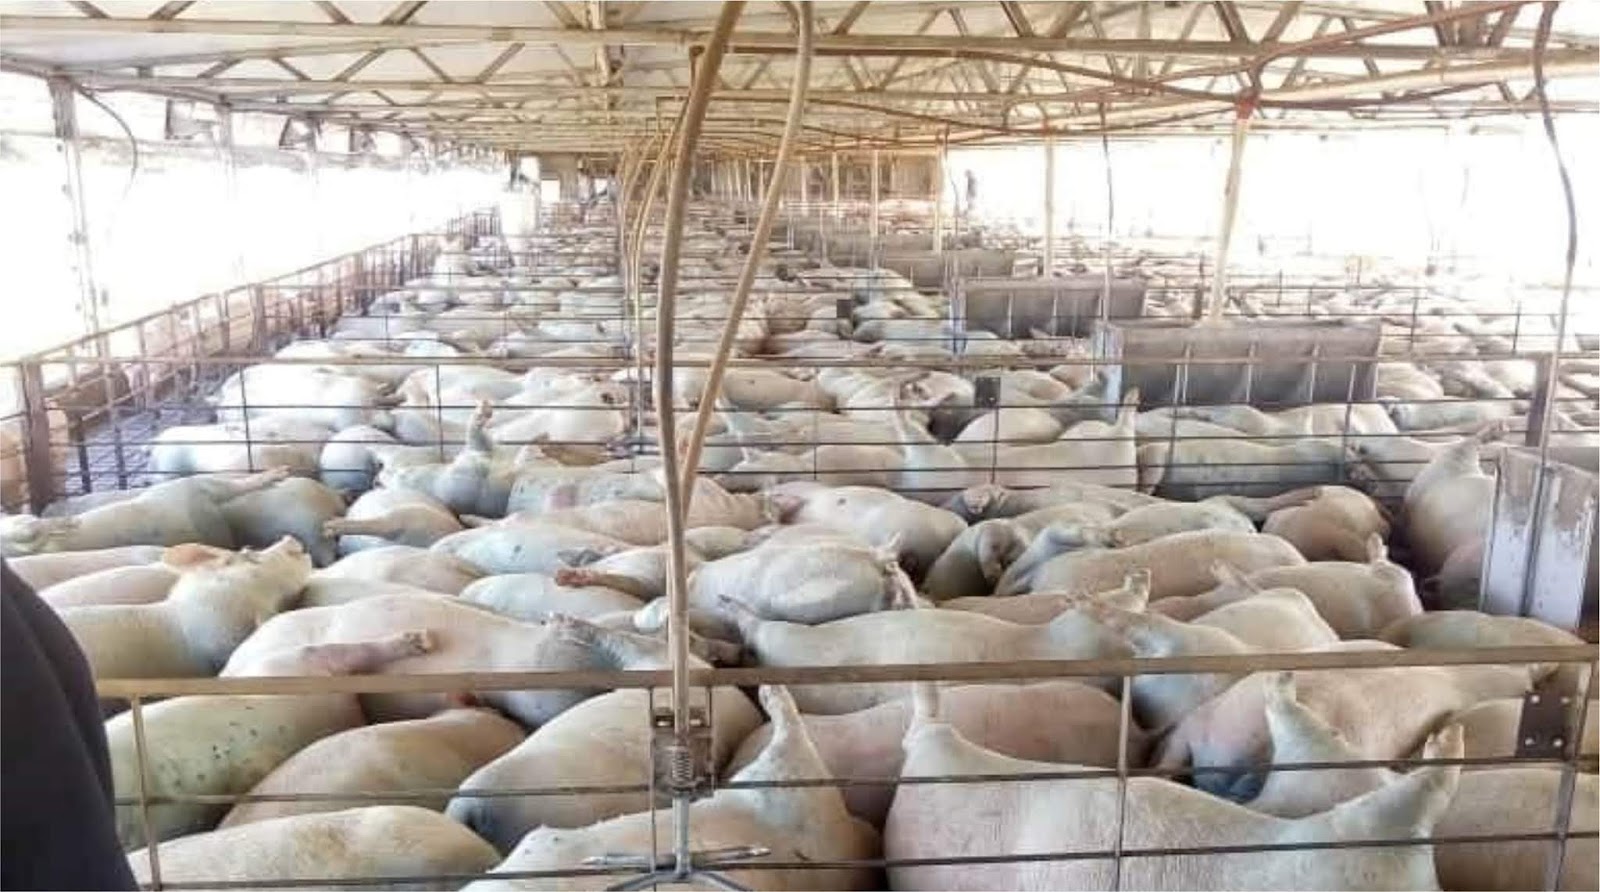 Avellaneda Murieron 400 Cerdos Asfixiados En Un Criadero Info